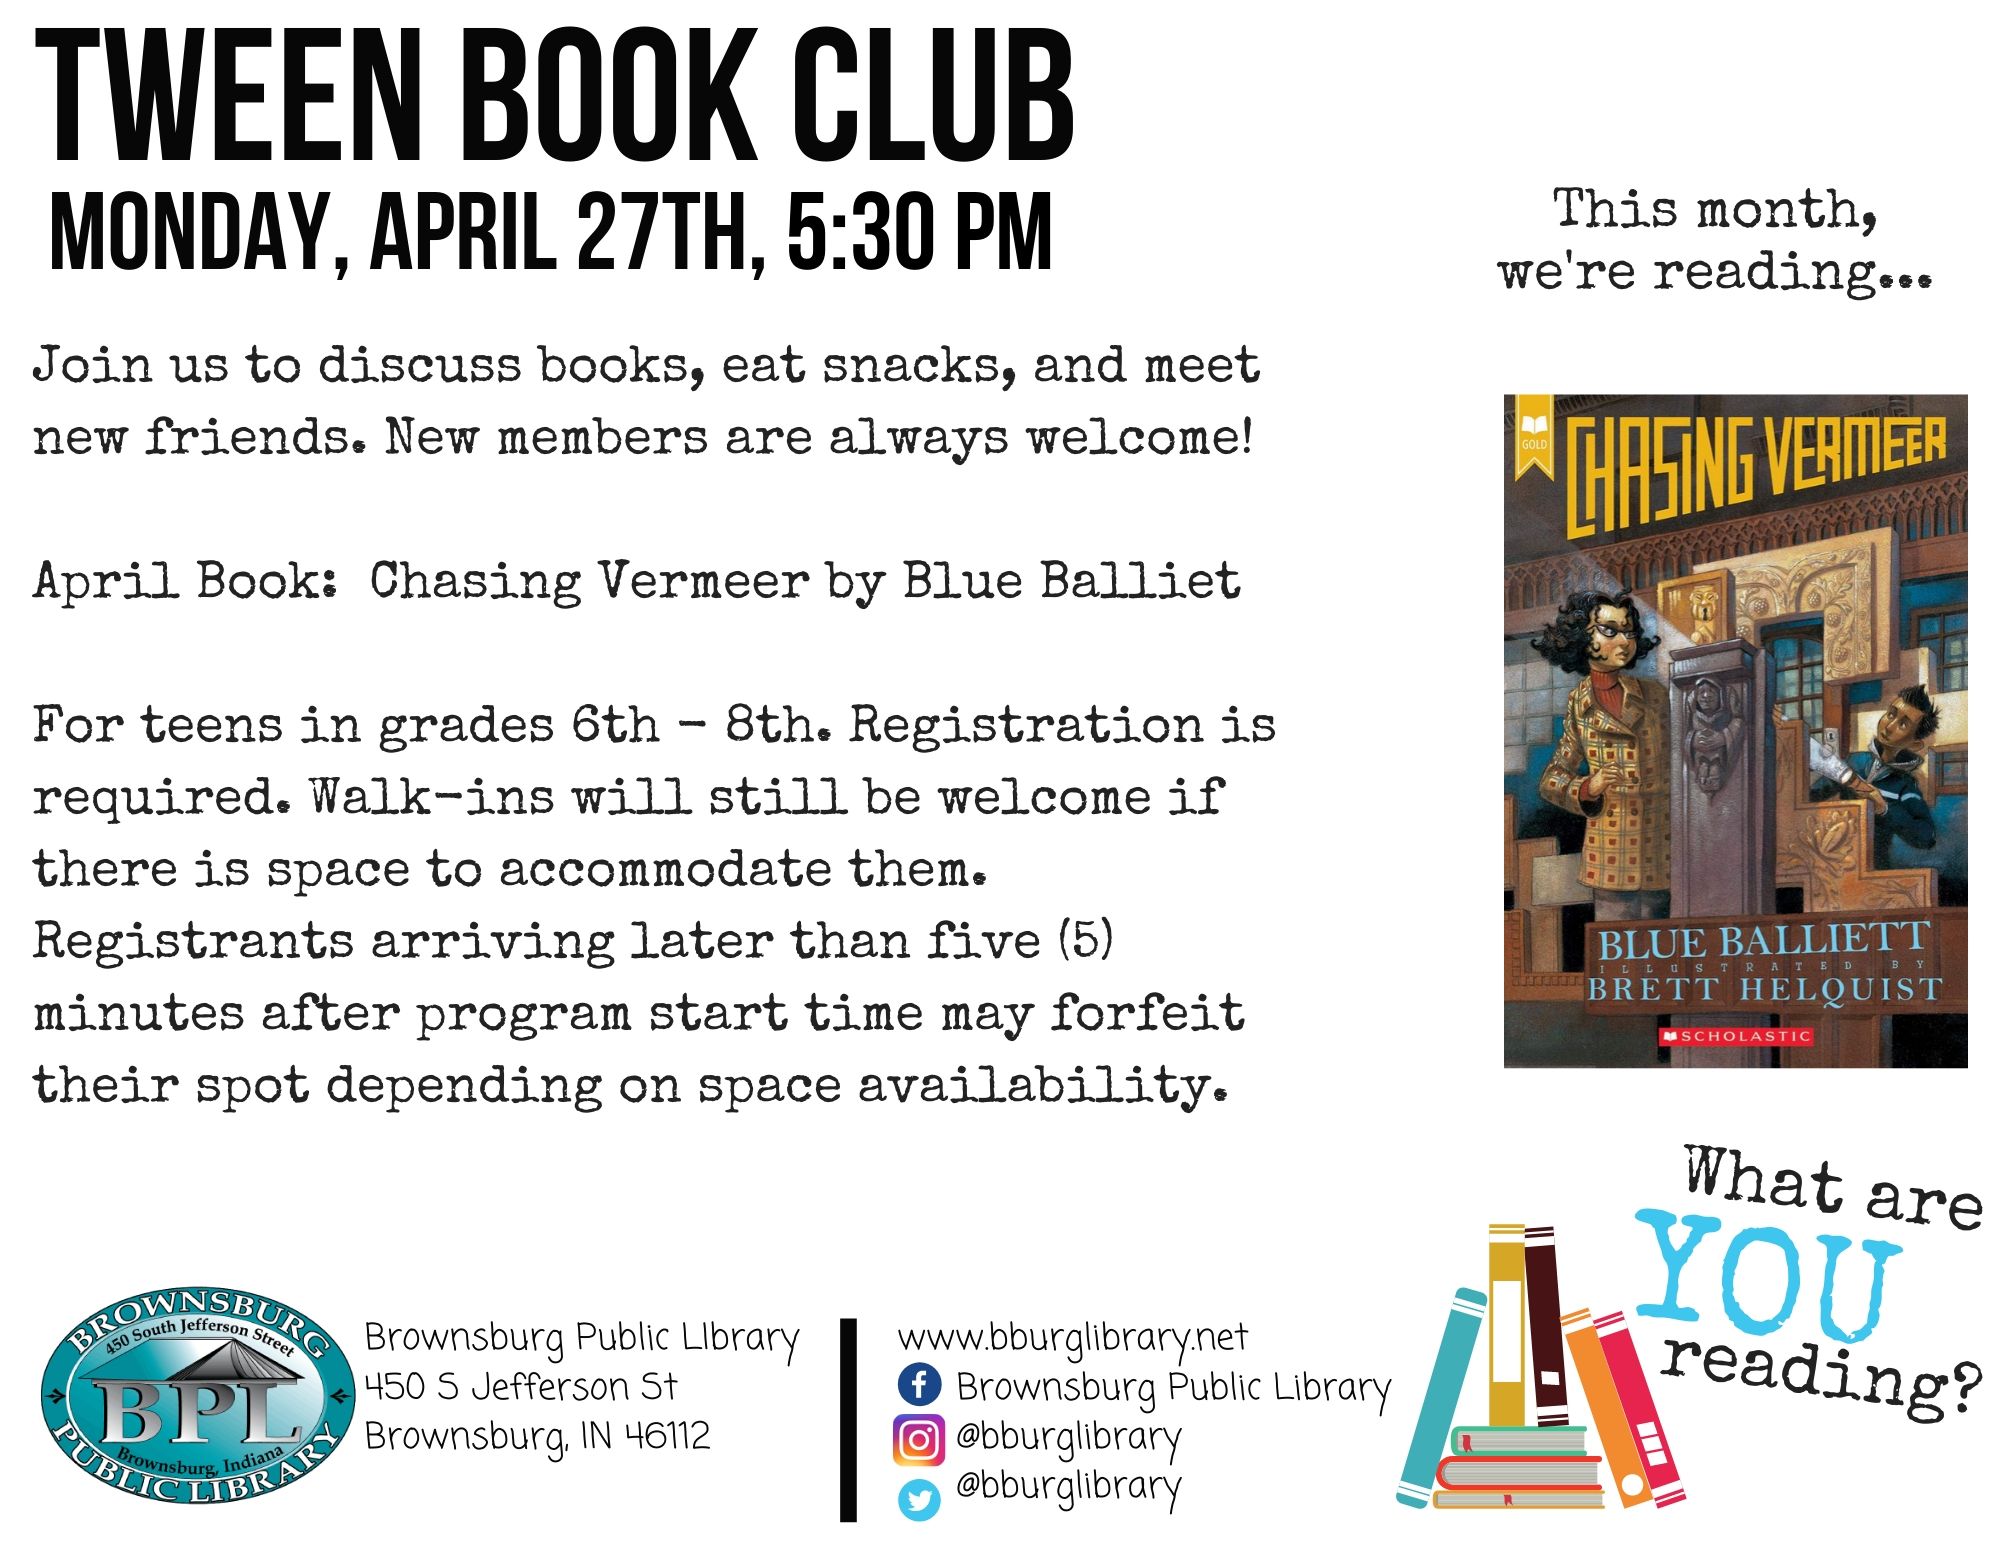 Tween Book Club April 27th at 5:30